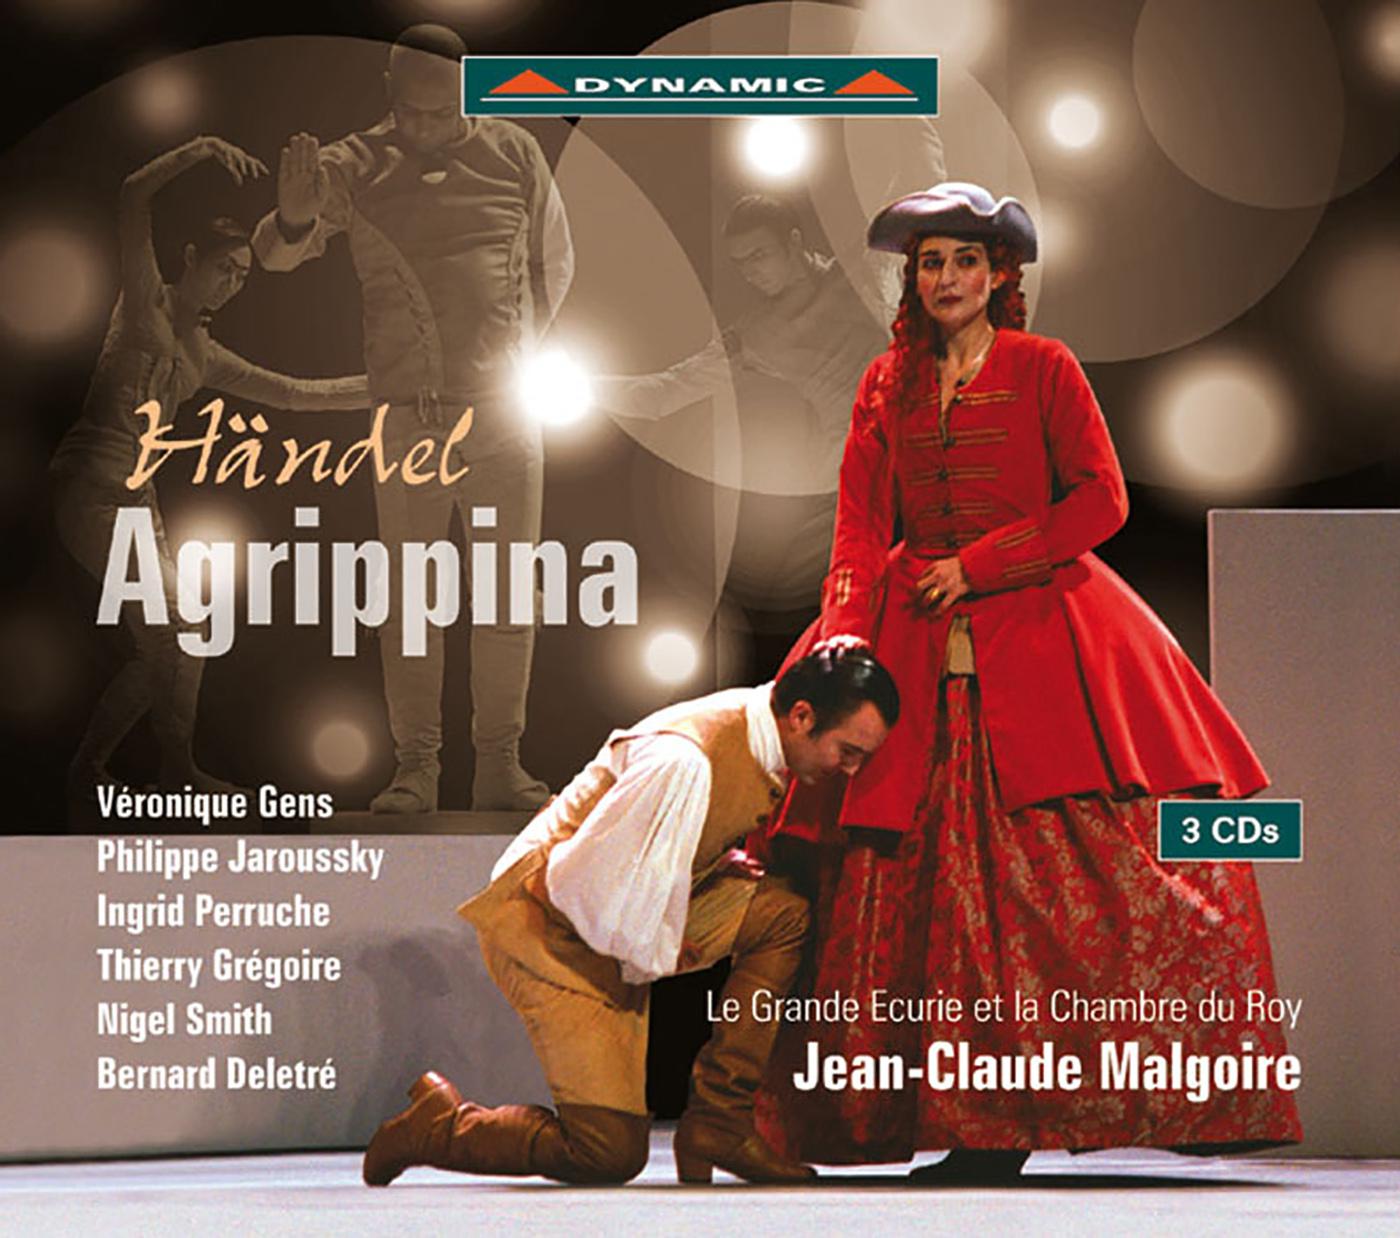 Jean-Claude Malgoire - Agrippina, HWV 6:Act I Scene 7: Amici, al sen vi stringo (Nerone) - Scene 8: Ecco chi presto (Pallante, Narciso) - Scene 9: Voi, che (Agrippina)